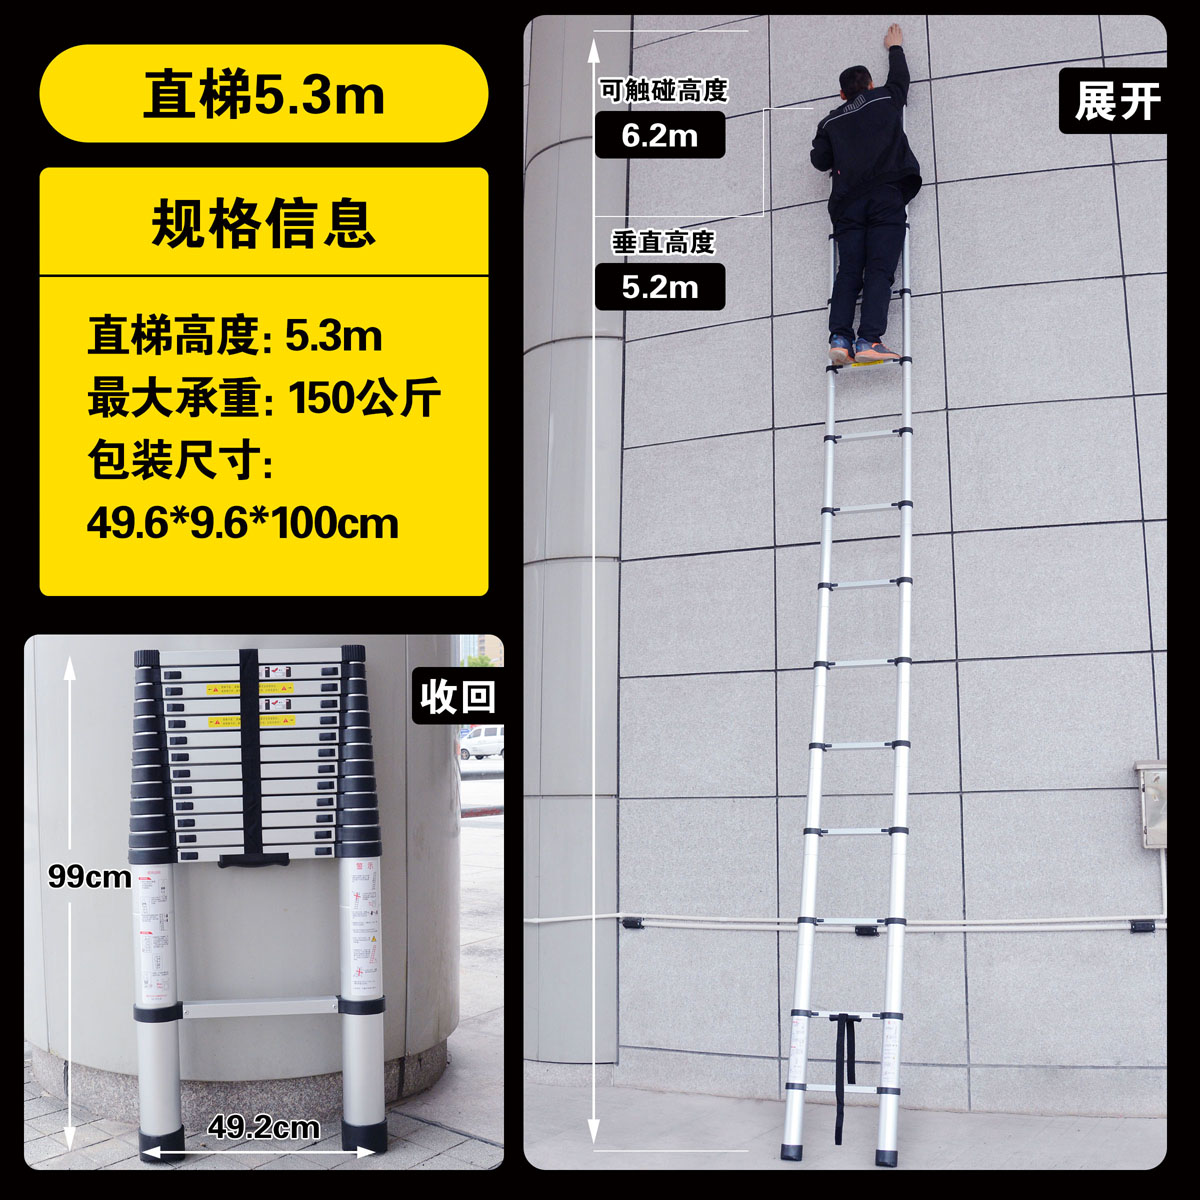 梯铝缩梯竹节伸收梯92981能便携梯铝合金家用梯多功梯升缩梯收缩